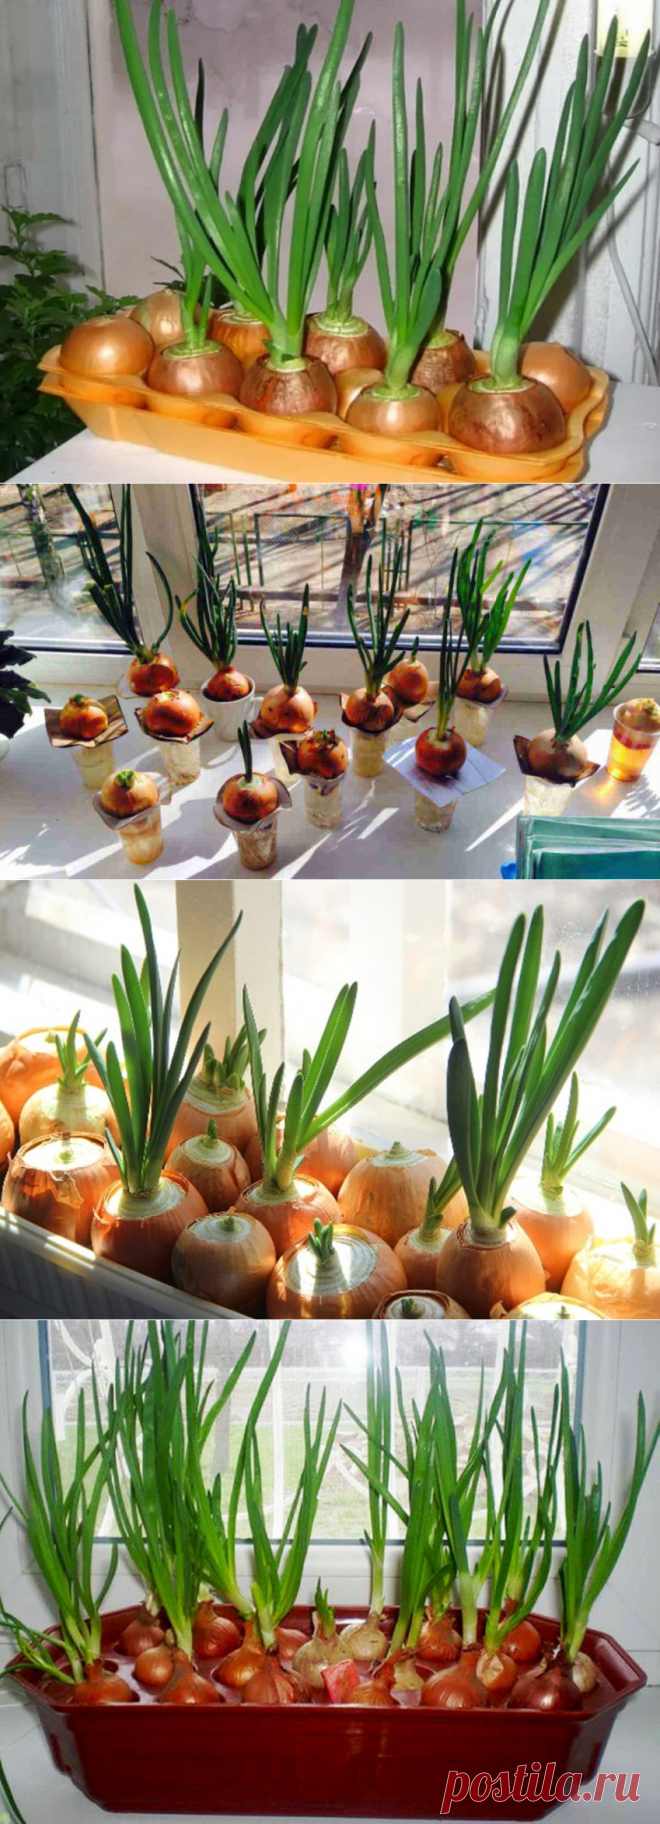 Выращивание зеленого лука дома на подоконнике в воде | Растения для сада, огорода